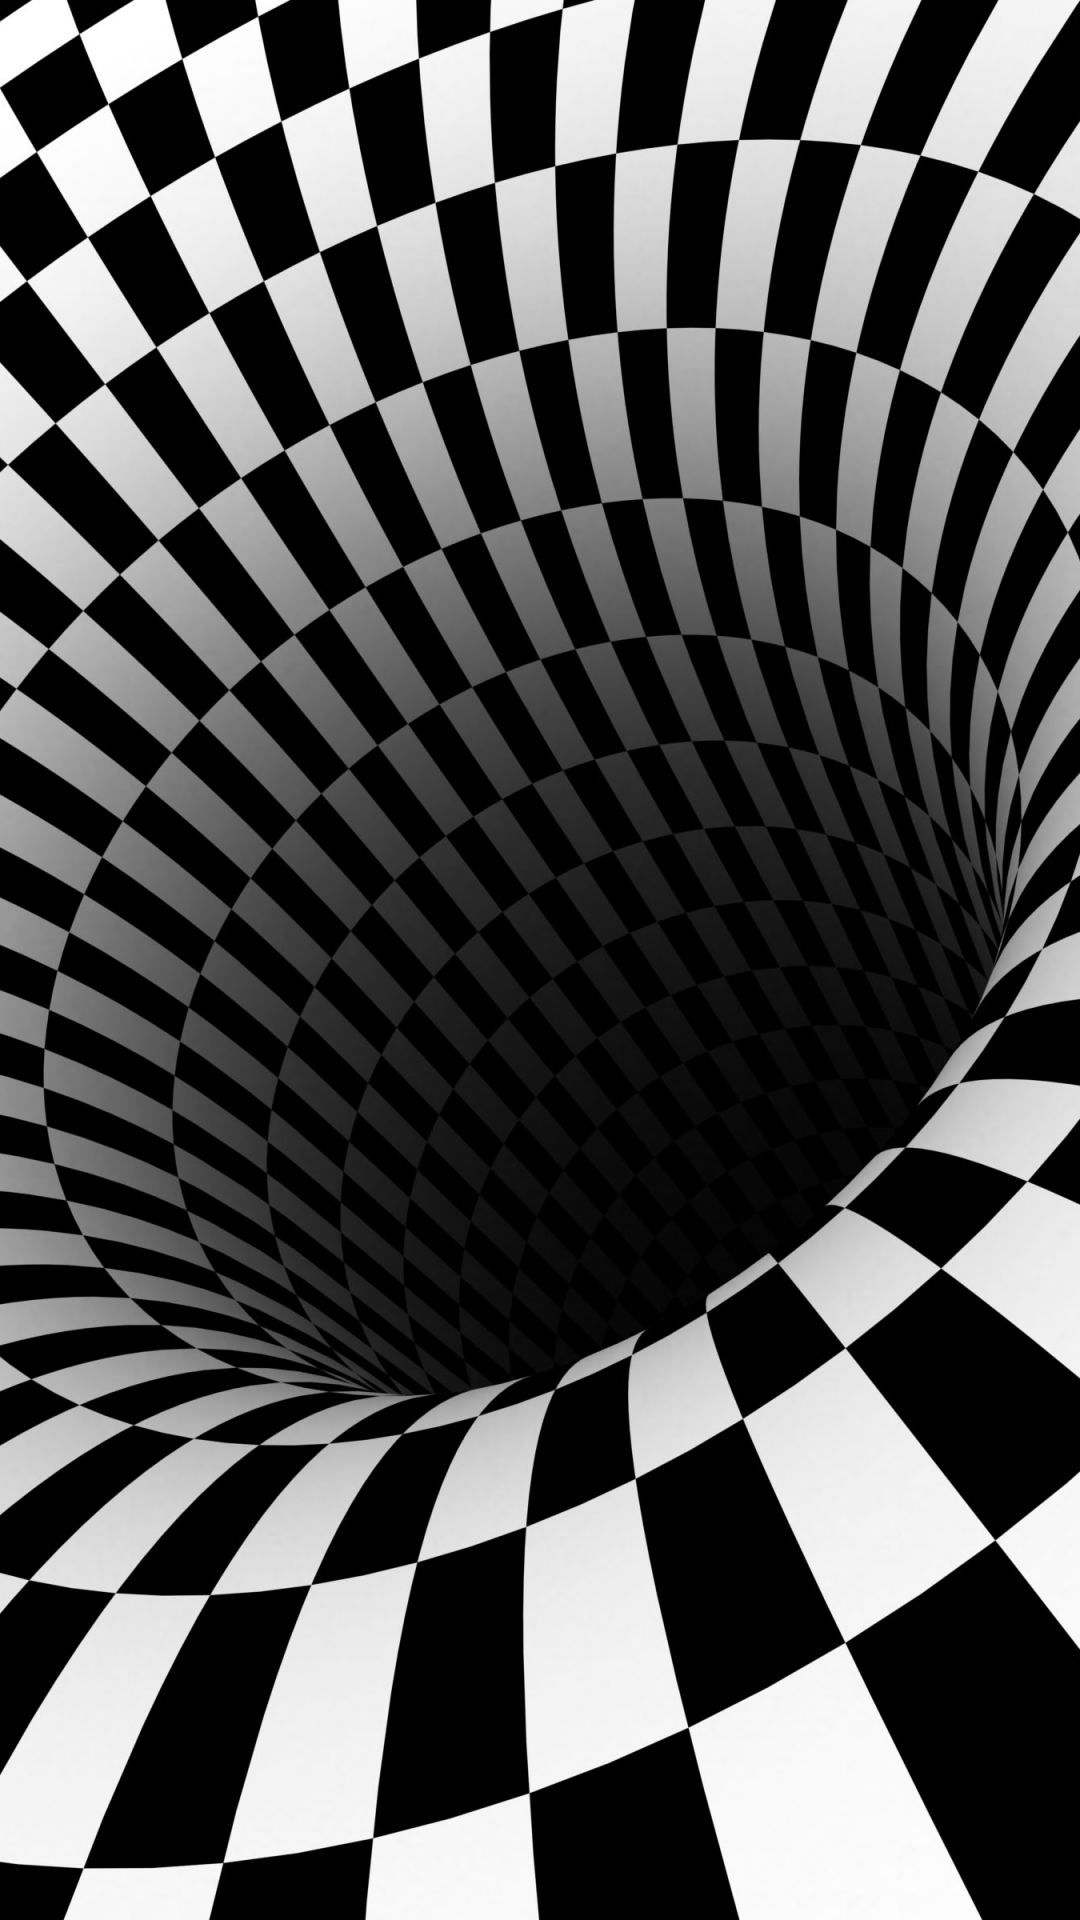 bewegliche optische täuschung tapete,schwarz und weiß,schwarz,monochrome fotografie,einfarbig,muster